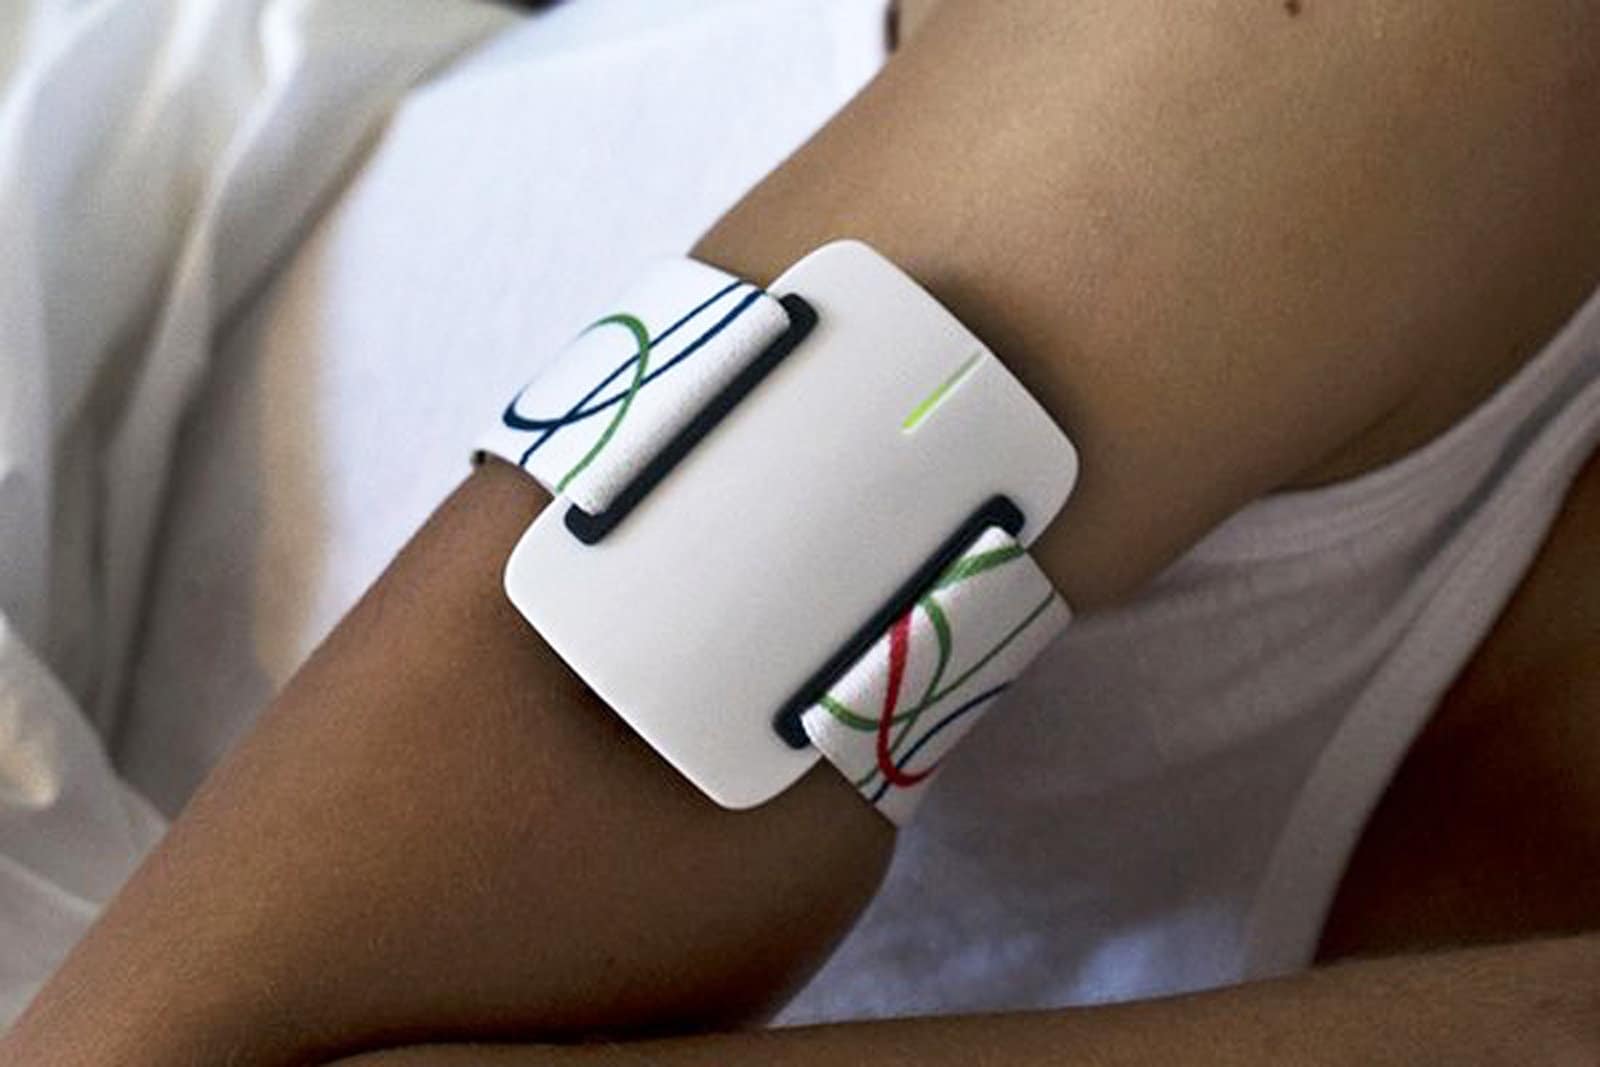 Nightwatch le bracelet intelligent qui détecte les crises d'épilepsies nocturnes